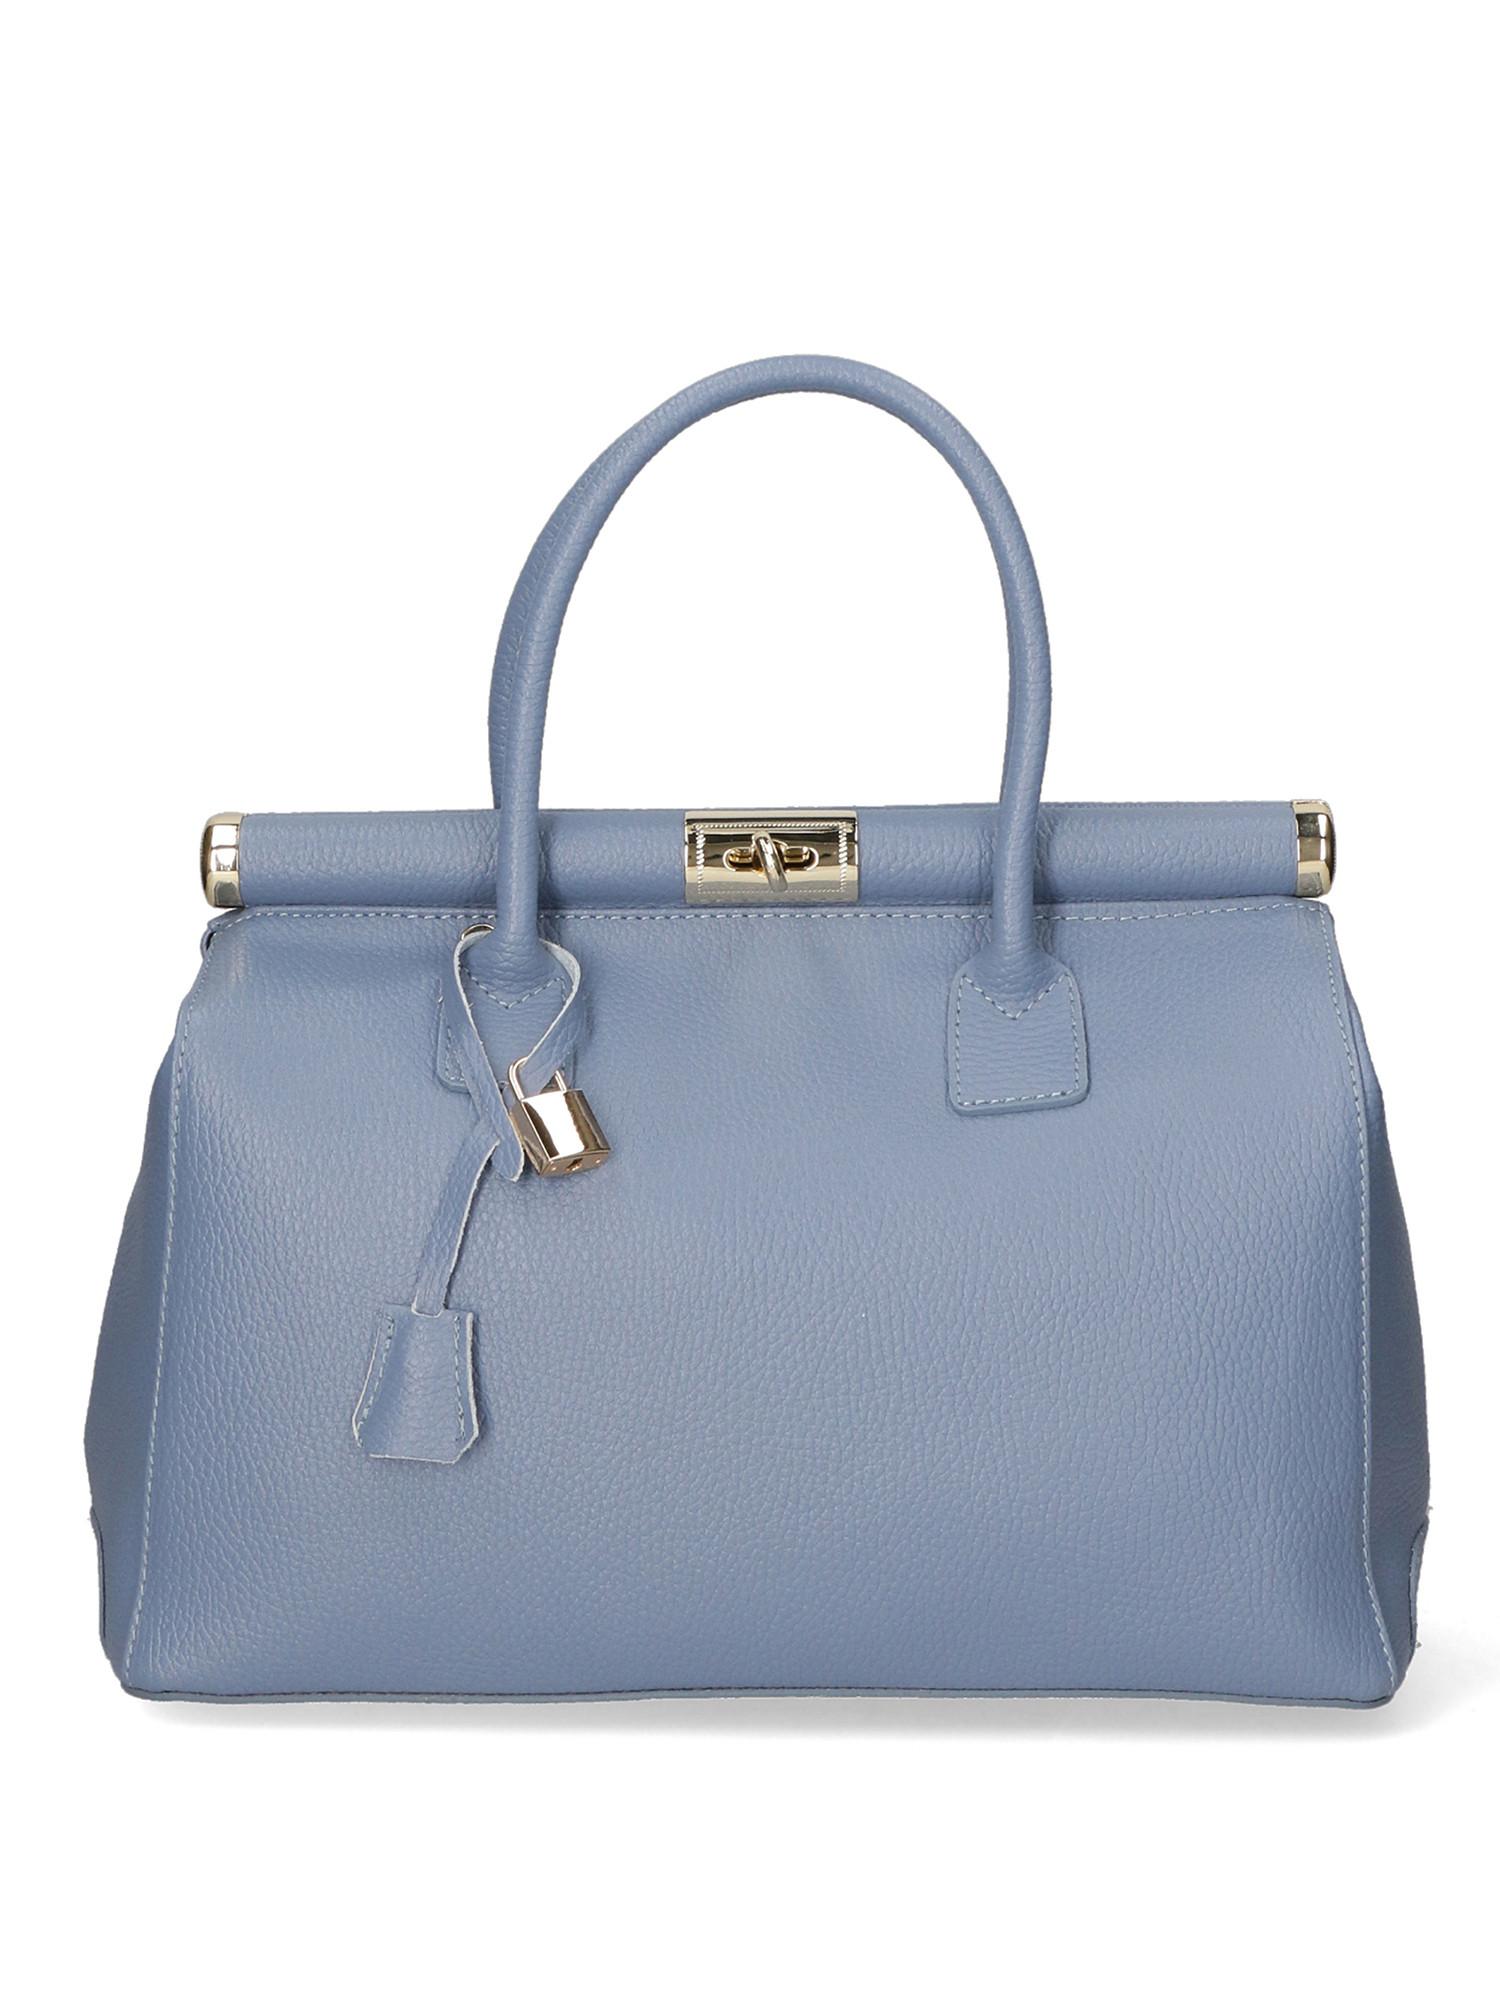 Handtasche Damen Himmelblau ONE SIZE von Gave Lux